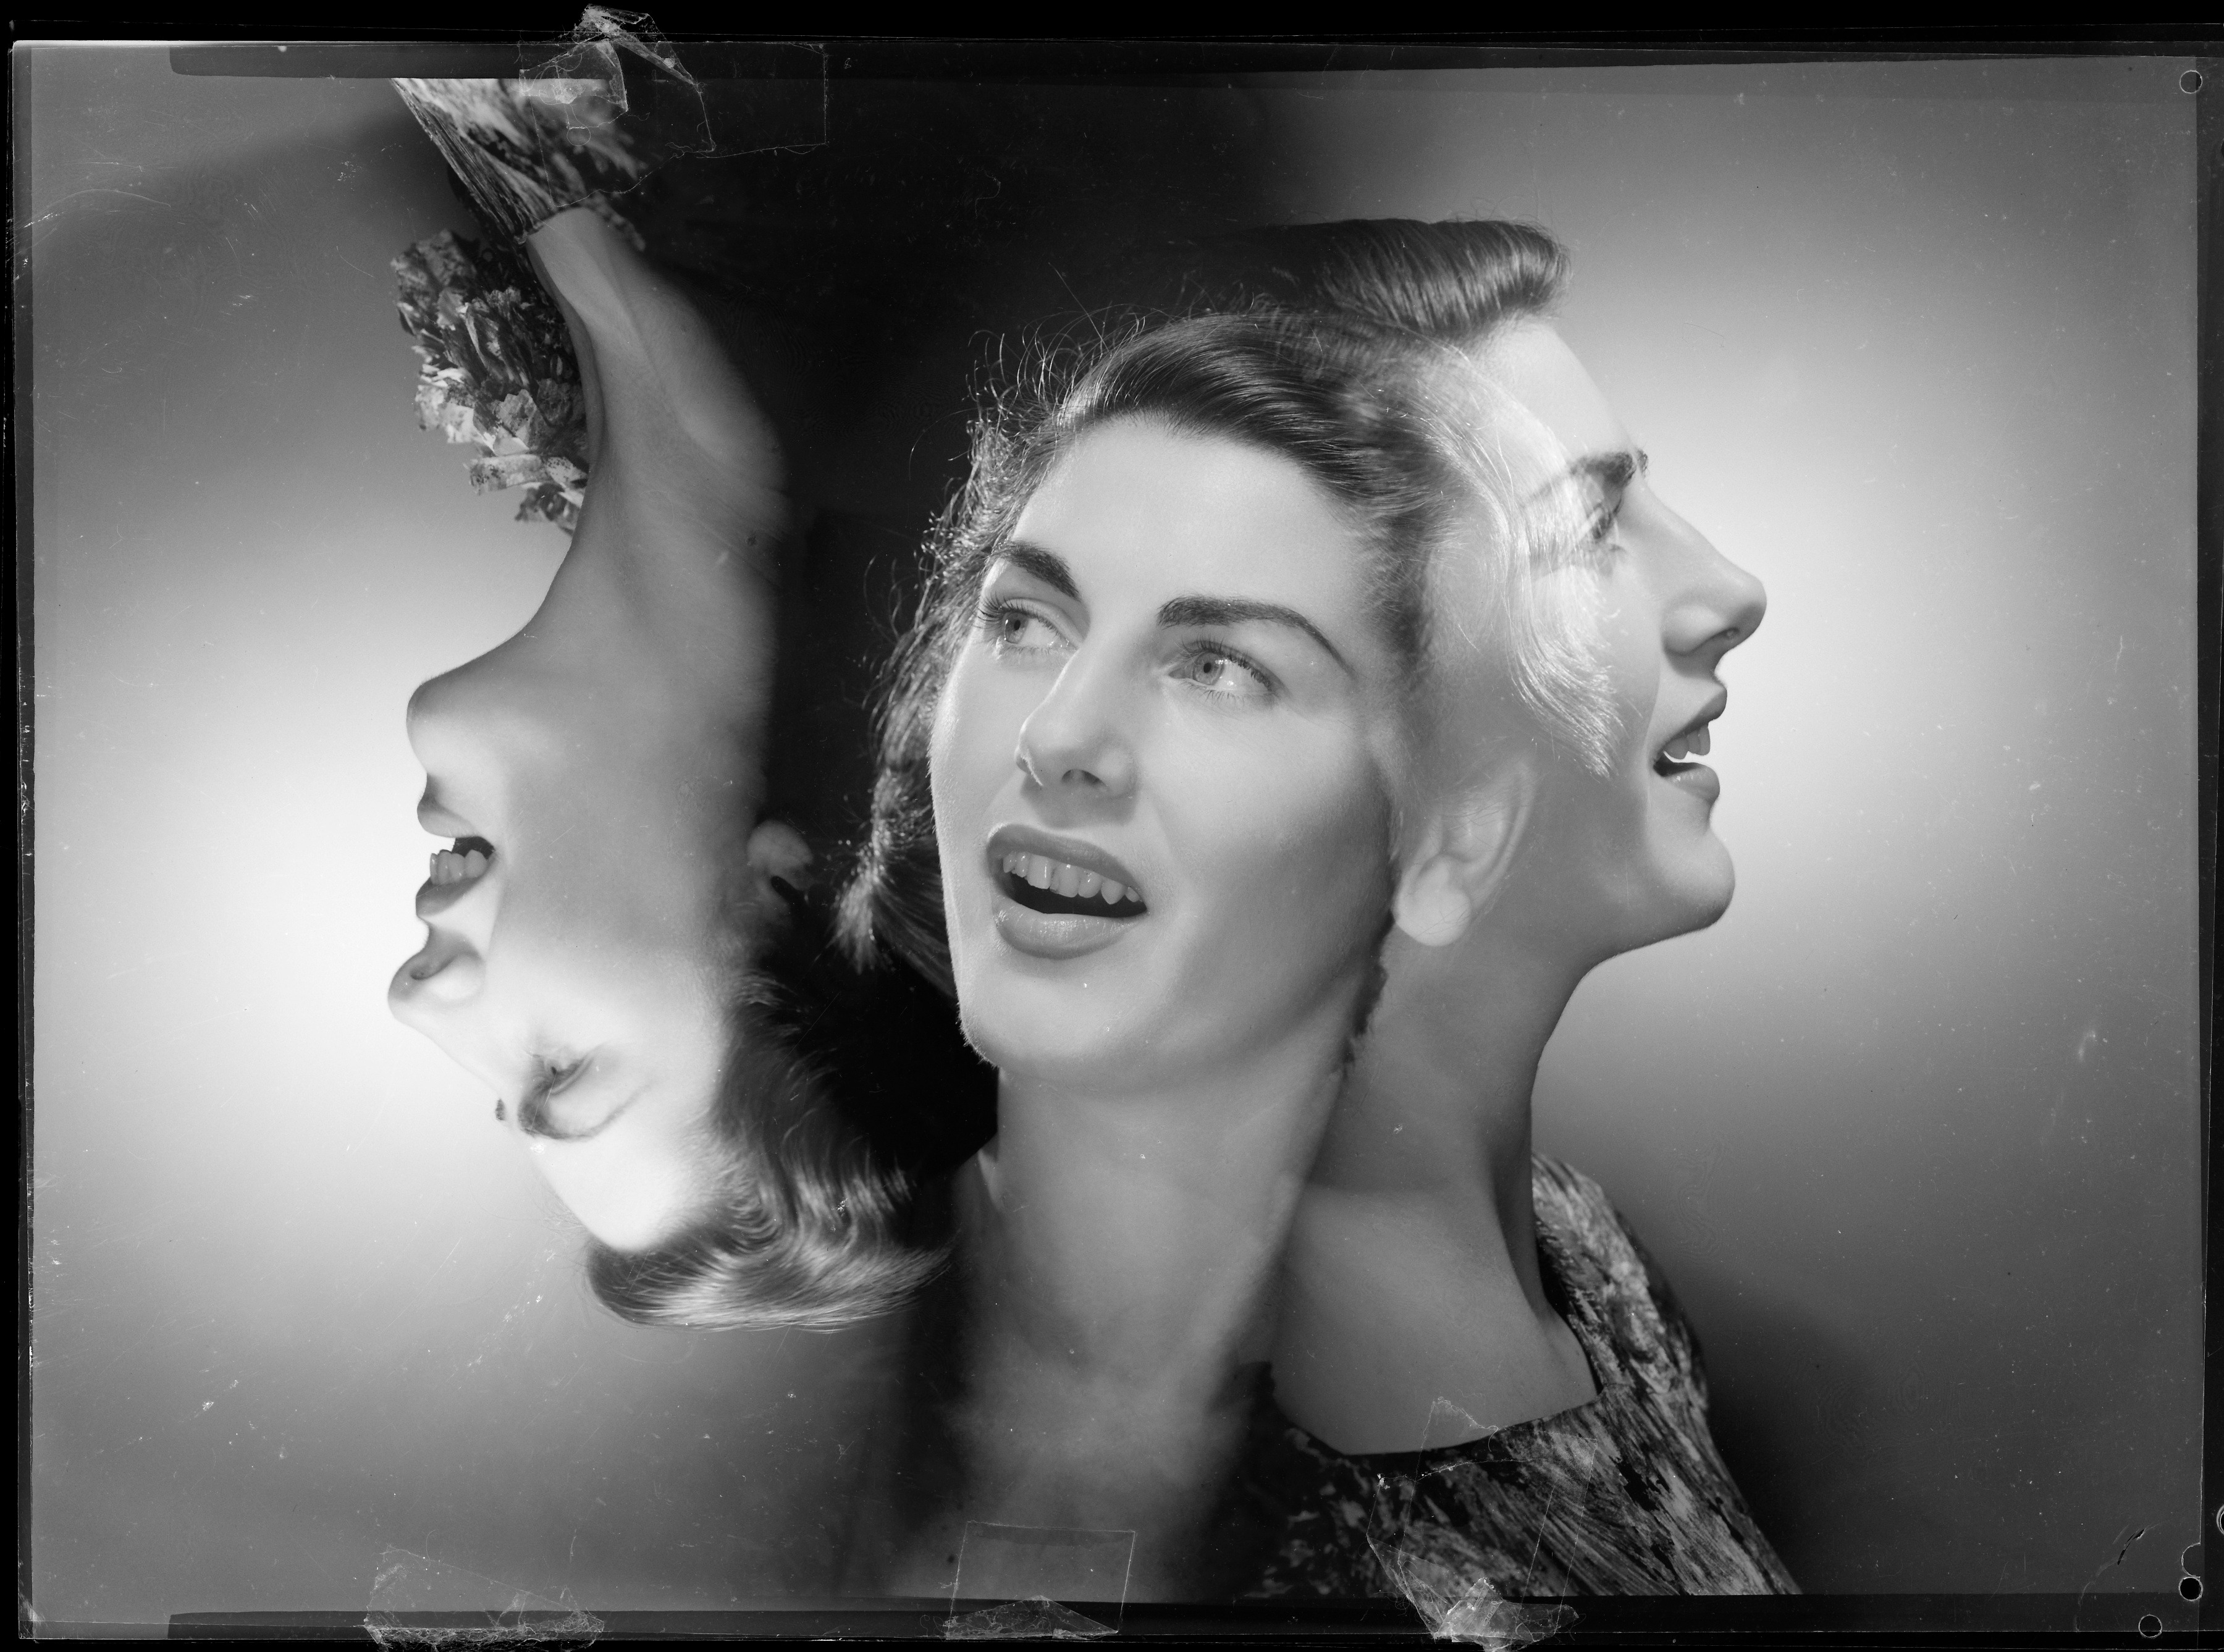 Jan Fahey, 1947, composite portrait by Max Dupain